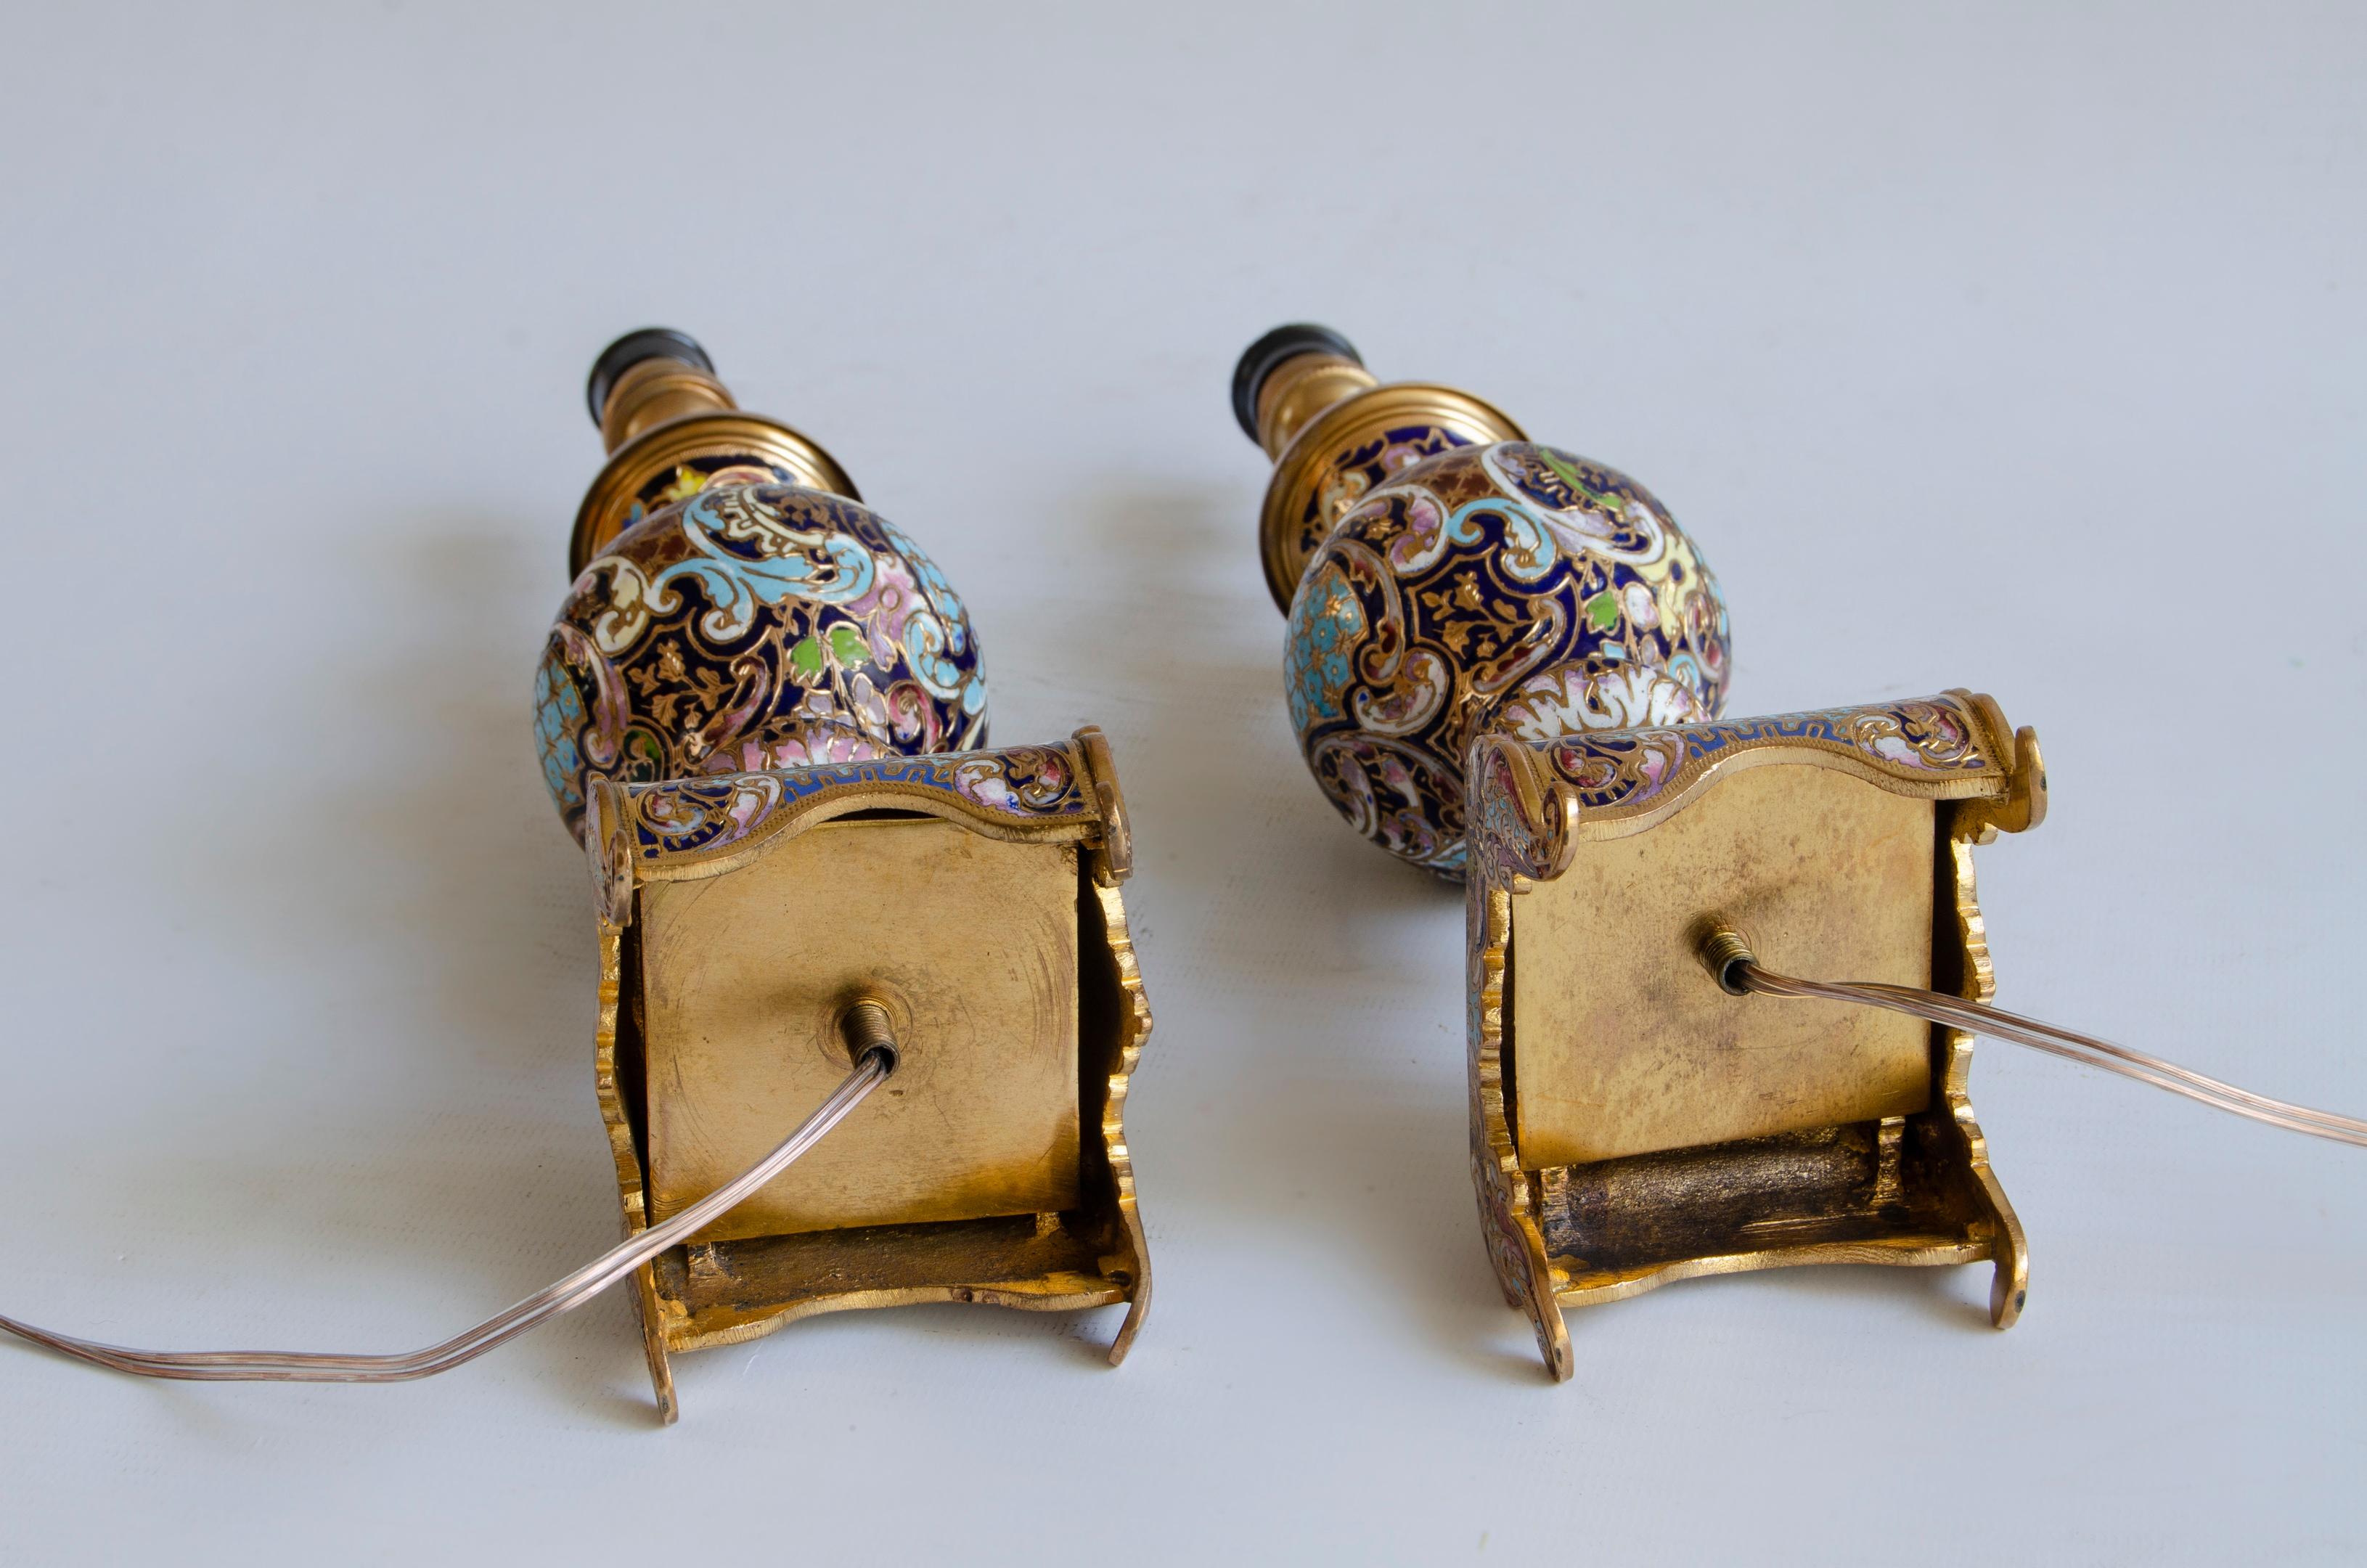 Ein Paar Napoleon-III-Kamplampen
Nachttischlampen aus Champleve-Email und Ronce
elektrifiziert 220 w
19. Jahrhundert, um 1870
herkunft Frankreich.
Der Napoleon-III-Stil hatte seine Blütezeit in den 1850er und 1880er Jahren. Kaiser Napoleon wollte